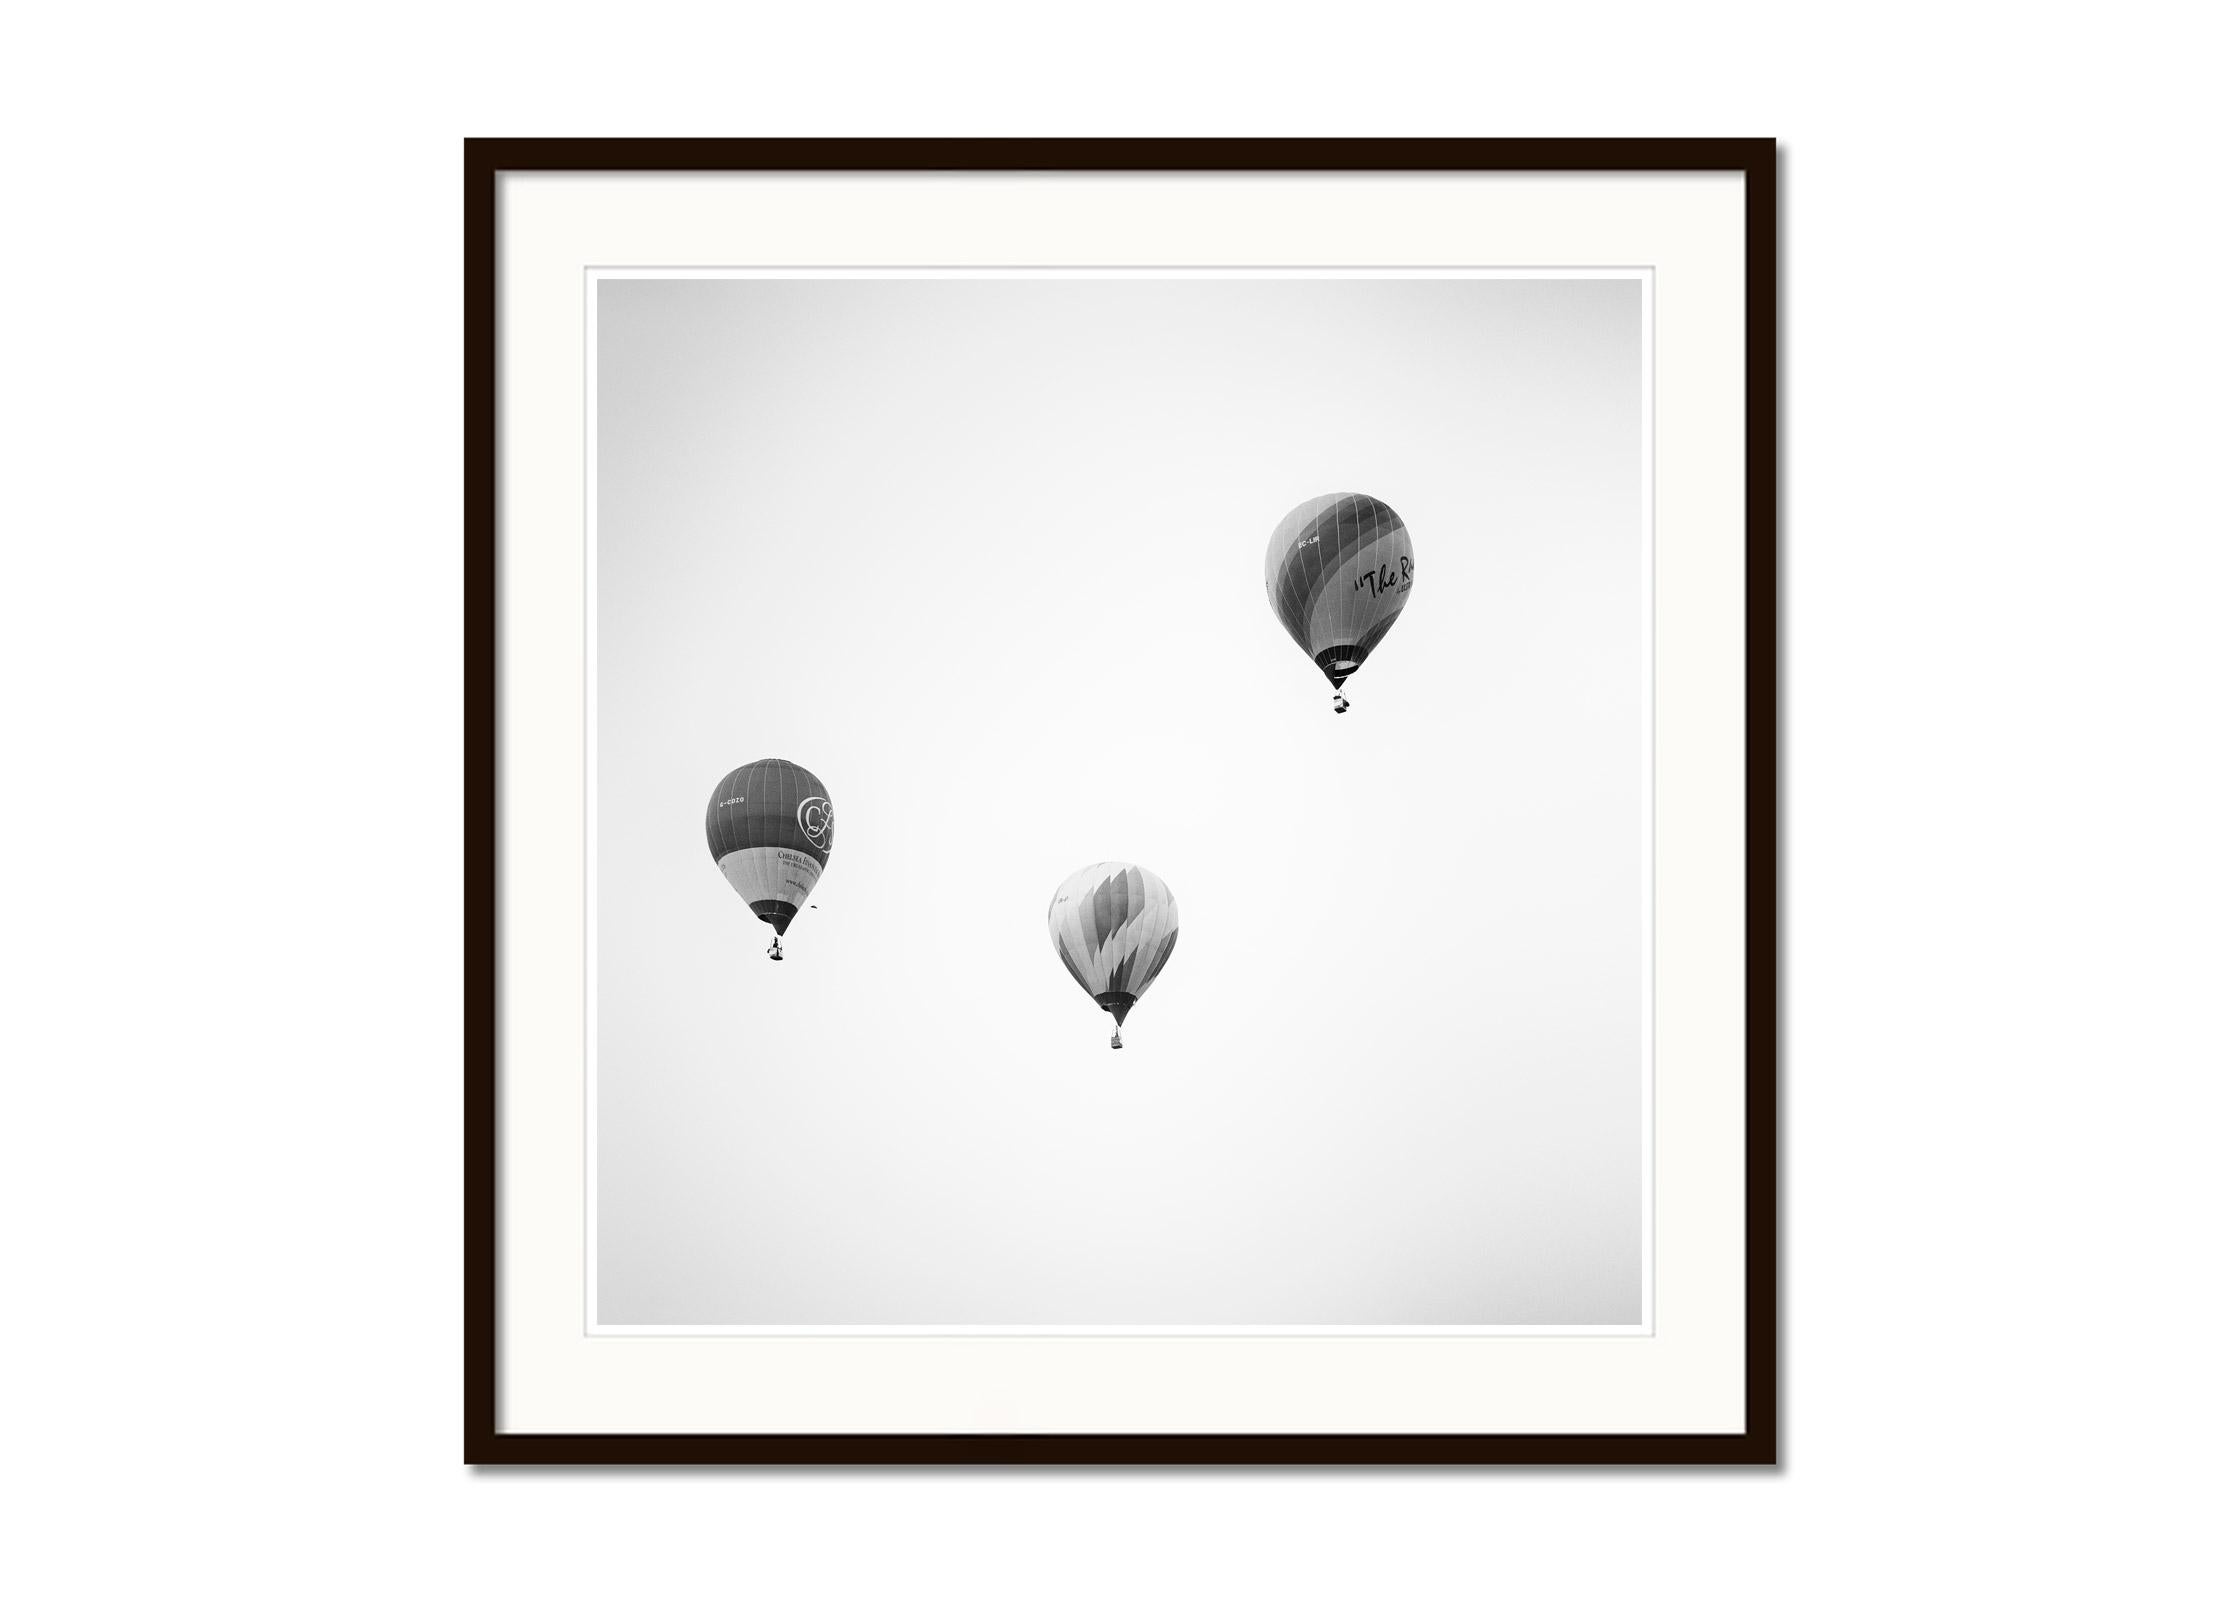 Hot Air Ballon, Championship, minimalistische Schwarz-Weiß-Fotografie, Landschaft (Grau), Black and White Photograph, von Gerald Berghammer